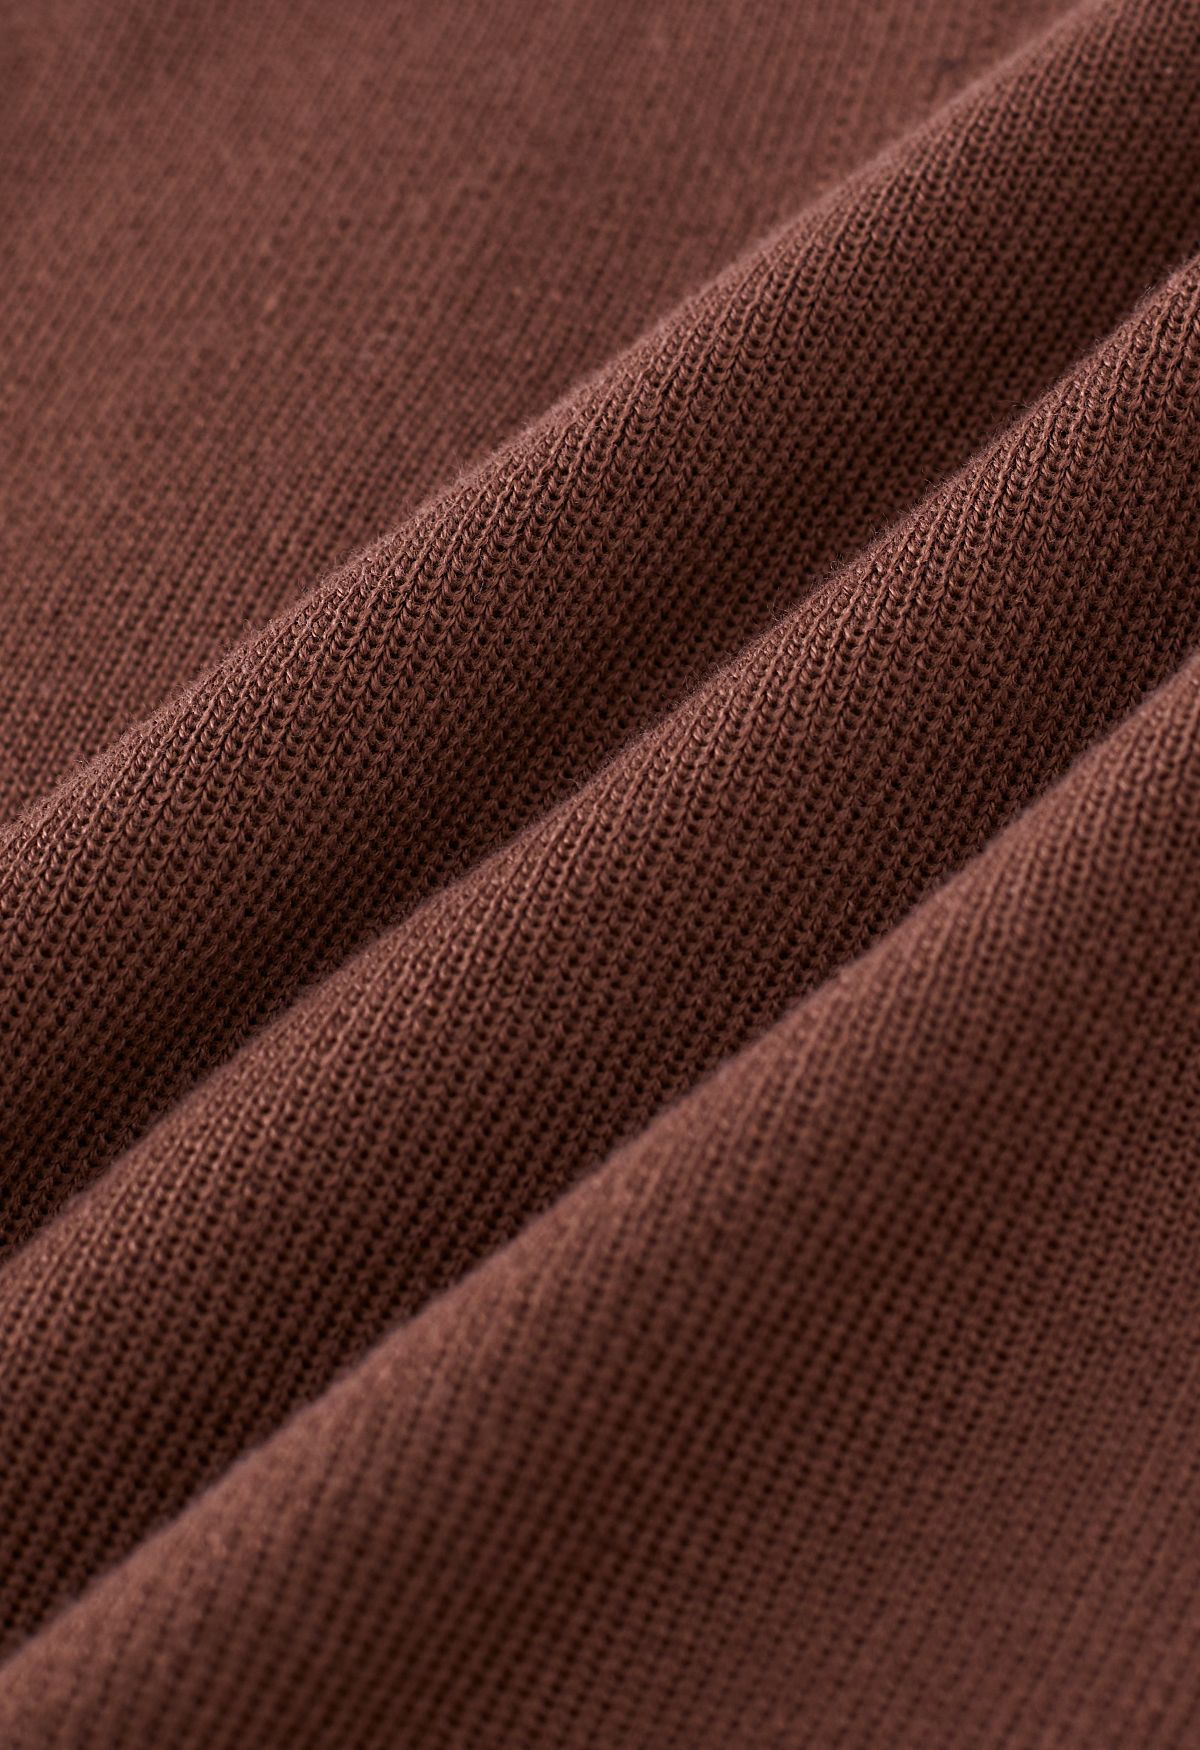 بلوزة قصيرة محبوكة بربطة عنق ذاتيًا باللون البني